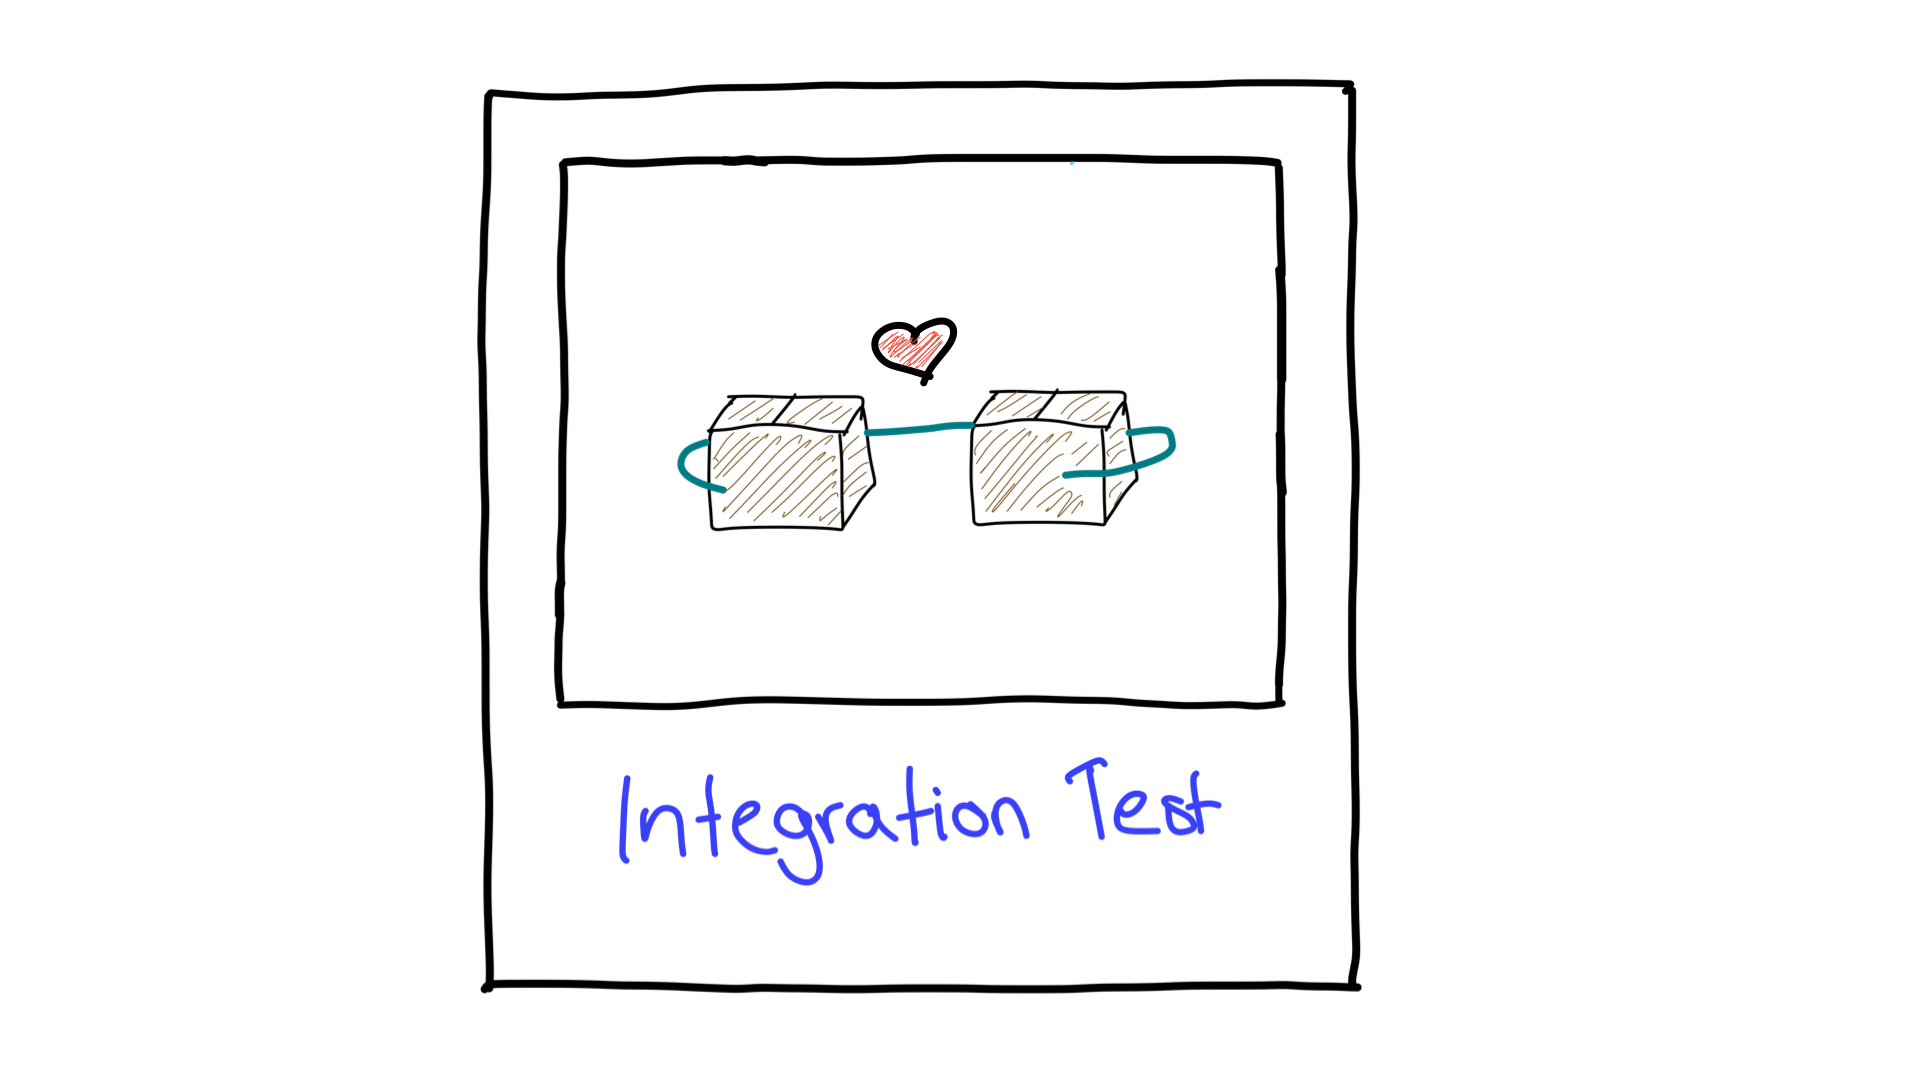 تصوير مبسّط لاختبار التكامل يوضح كيفية عمل وحدتين معًا.